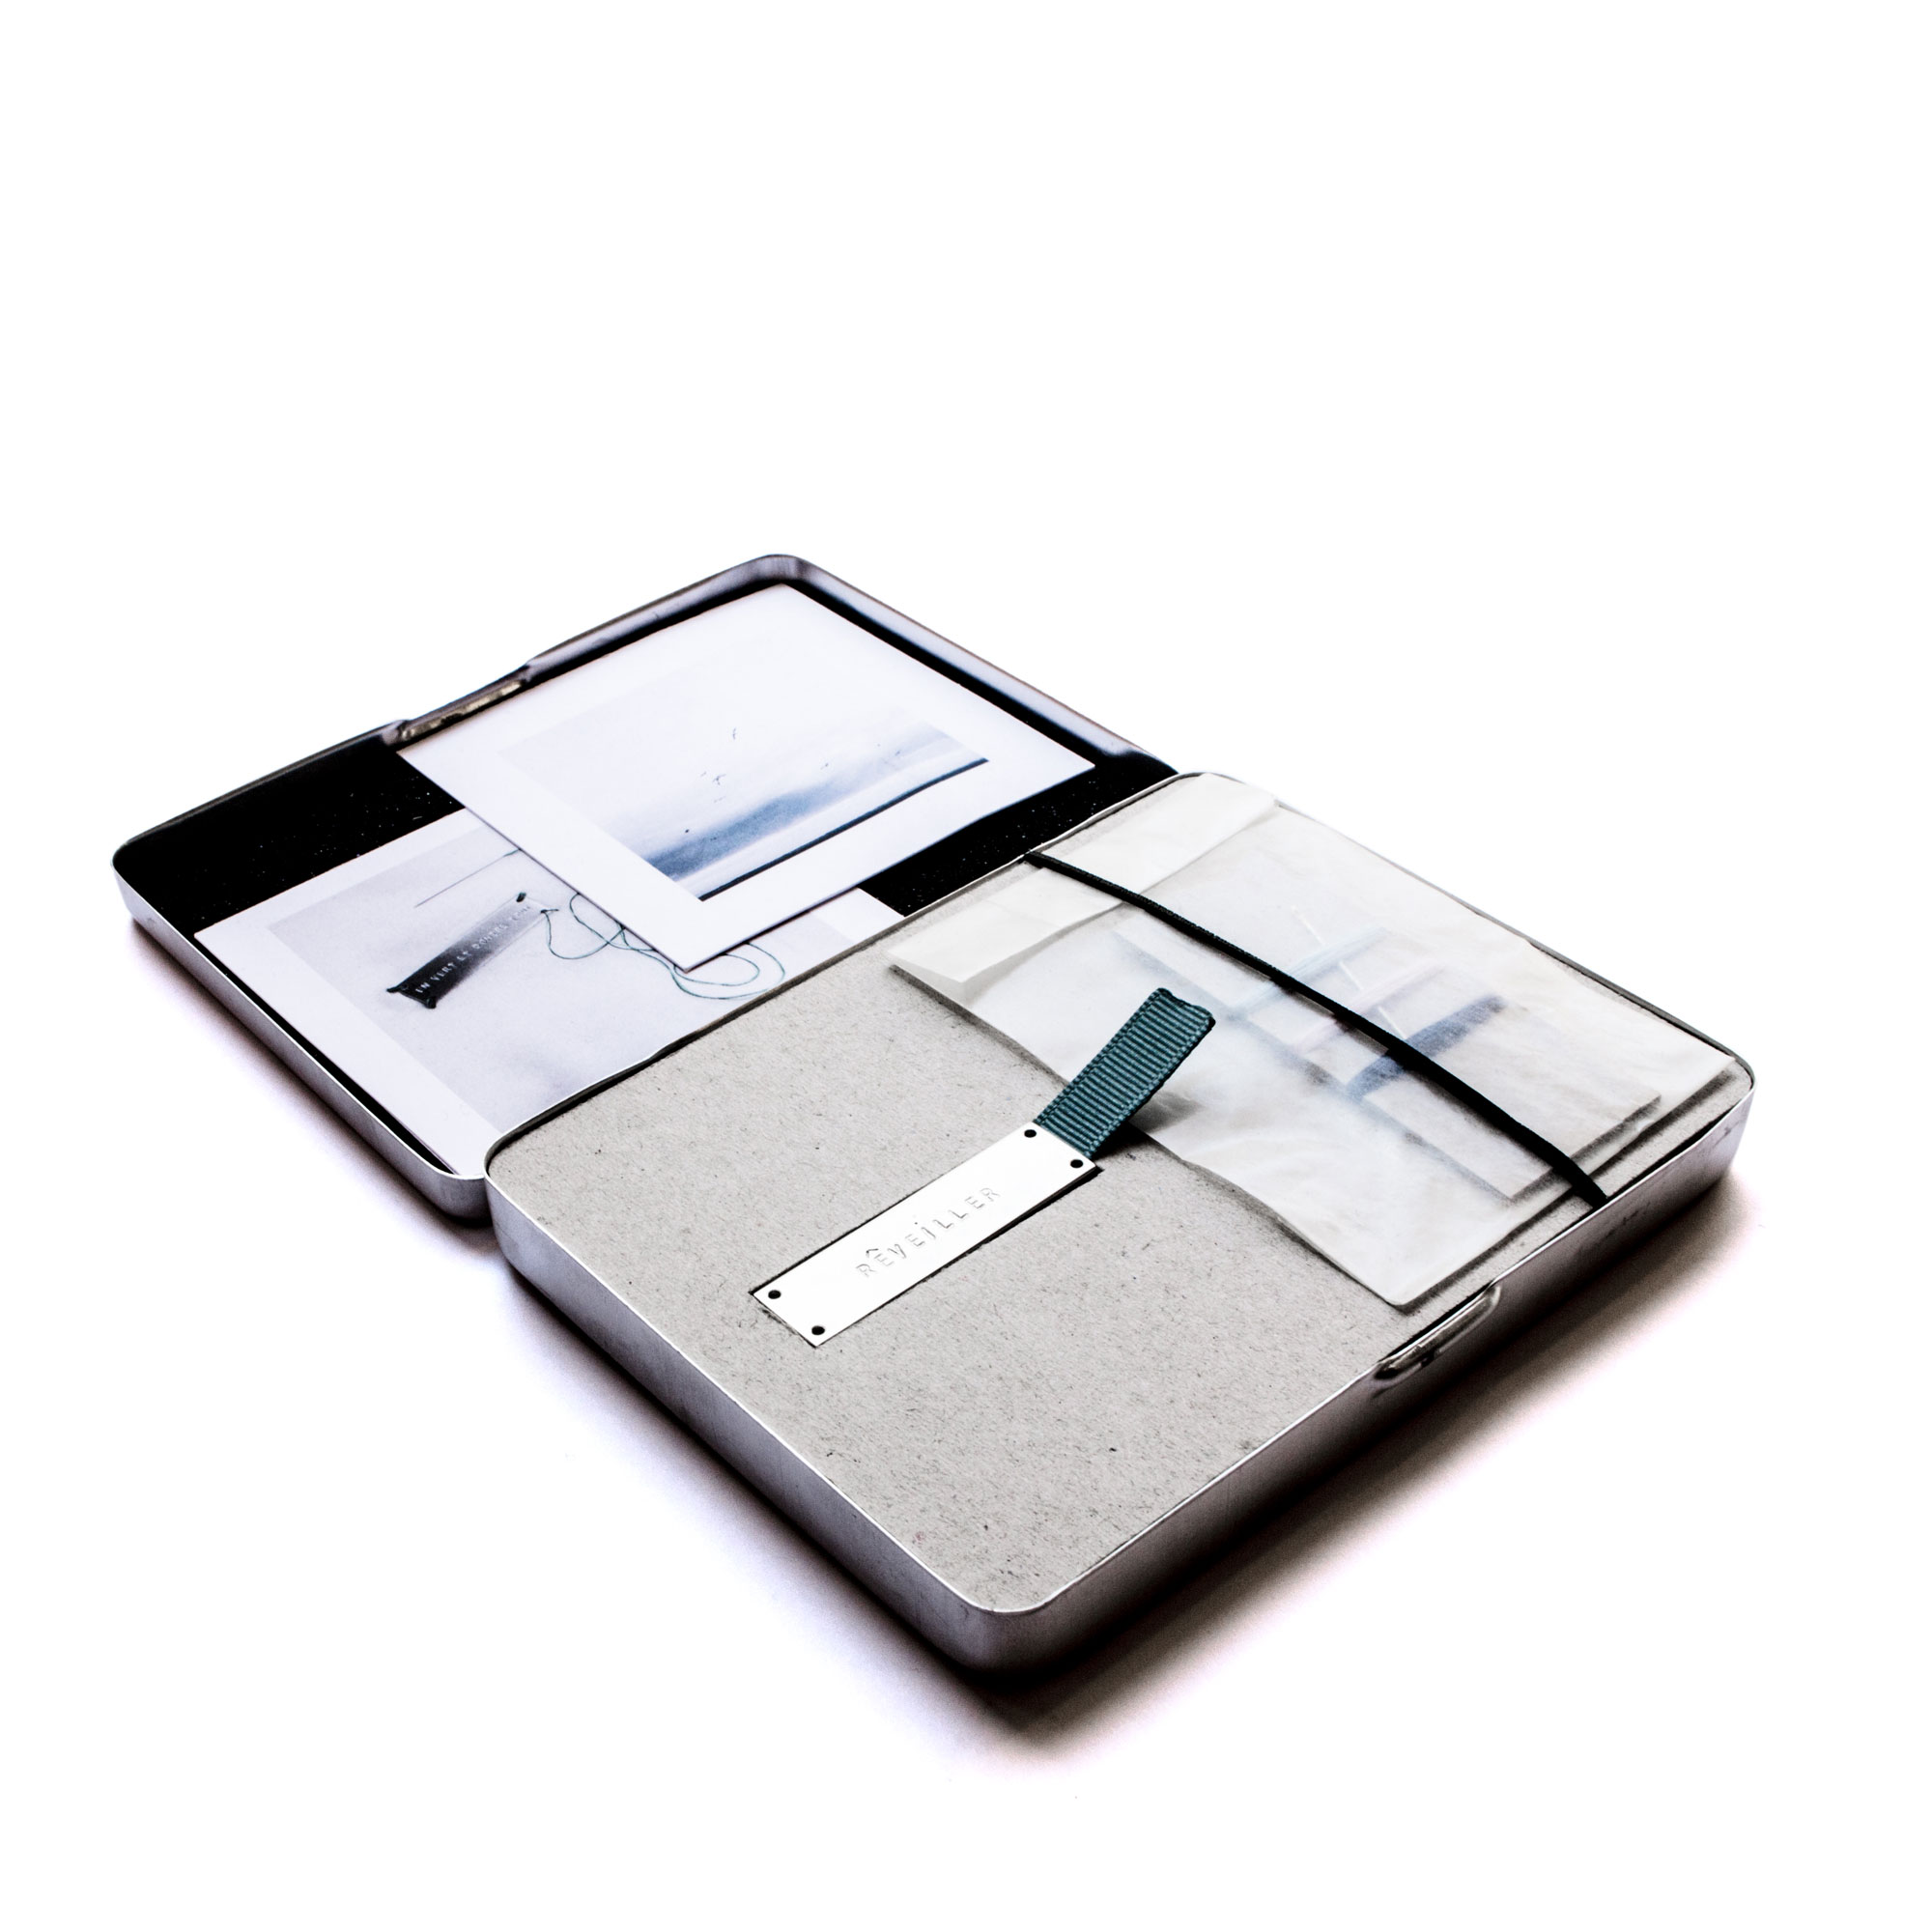 Nominette - Argent 925, fil de coton, matériel de couture et petite boite métalique - 10 X 13 X 1,5 cm - 2017
